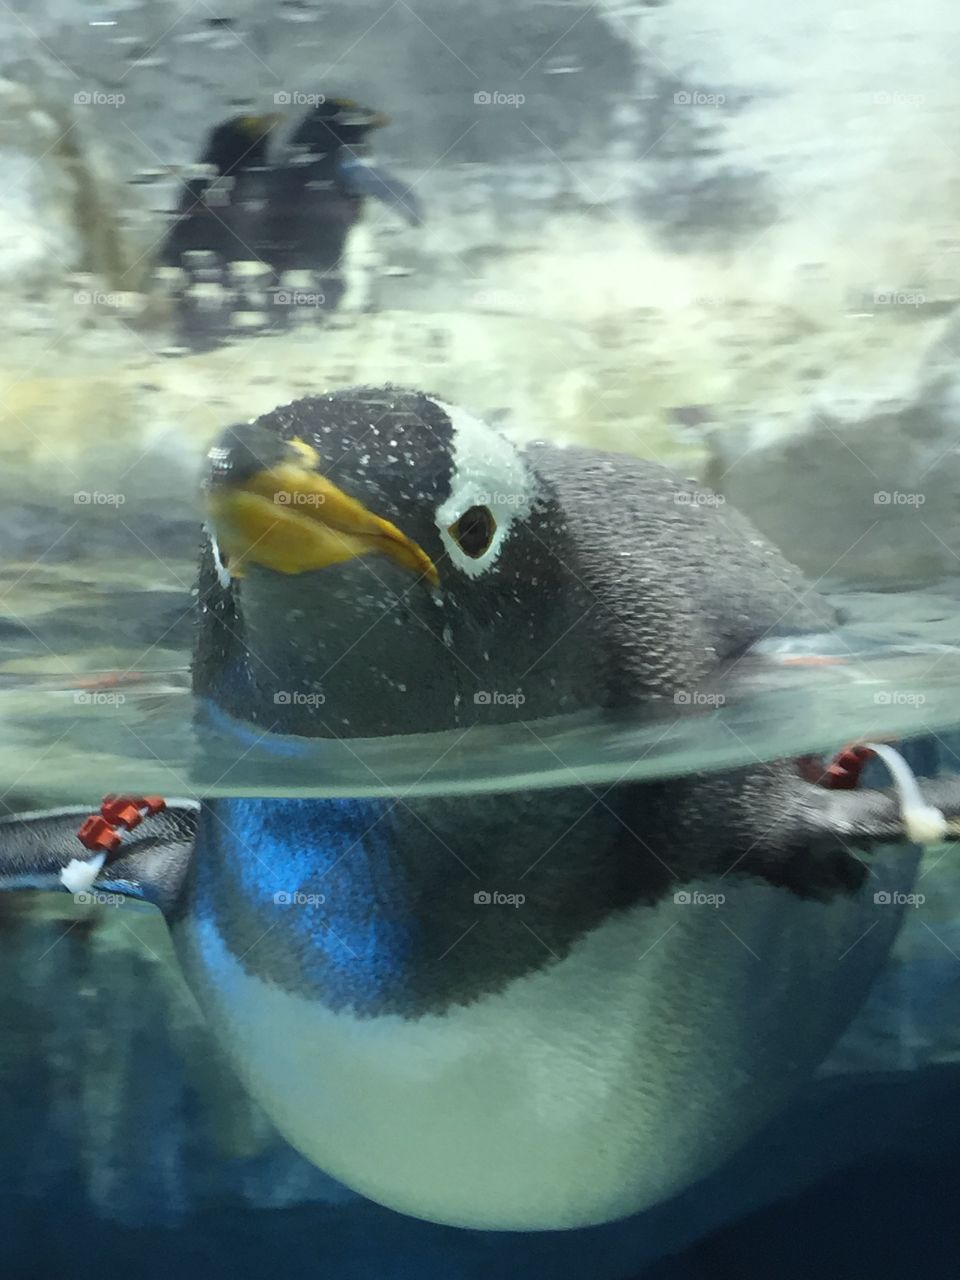 Penguin at Atlanta's Georgia Aquarium